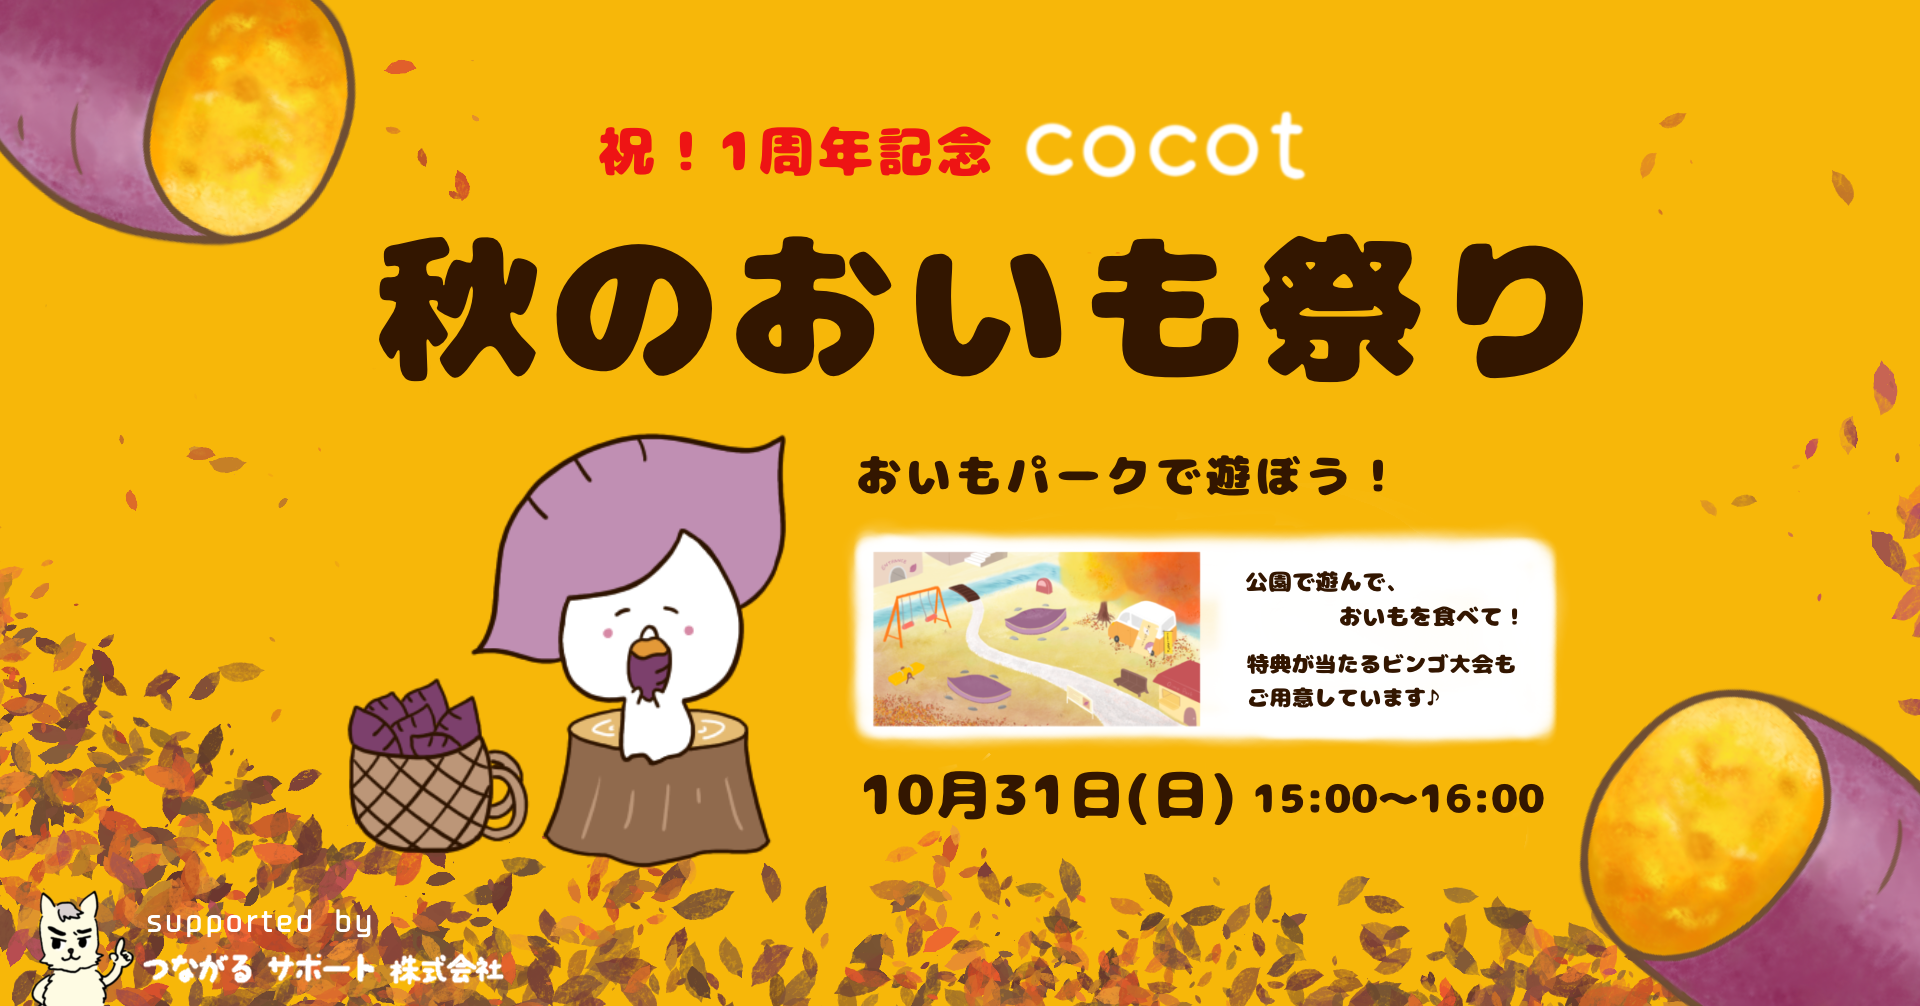 【焼き芋屋さんココット共同企画】秋のおいも祭り